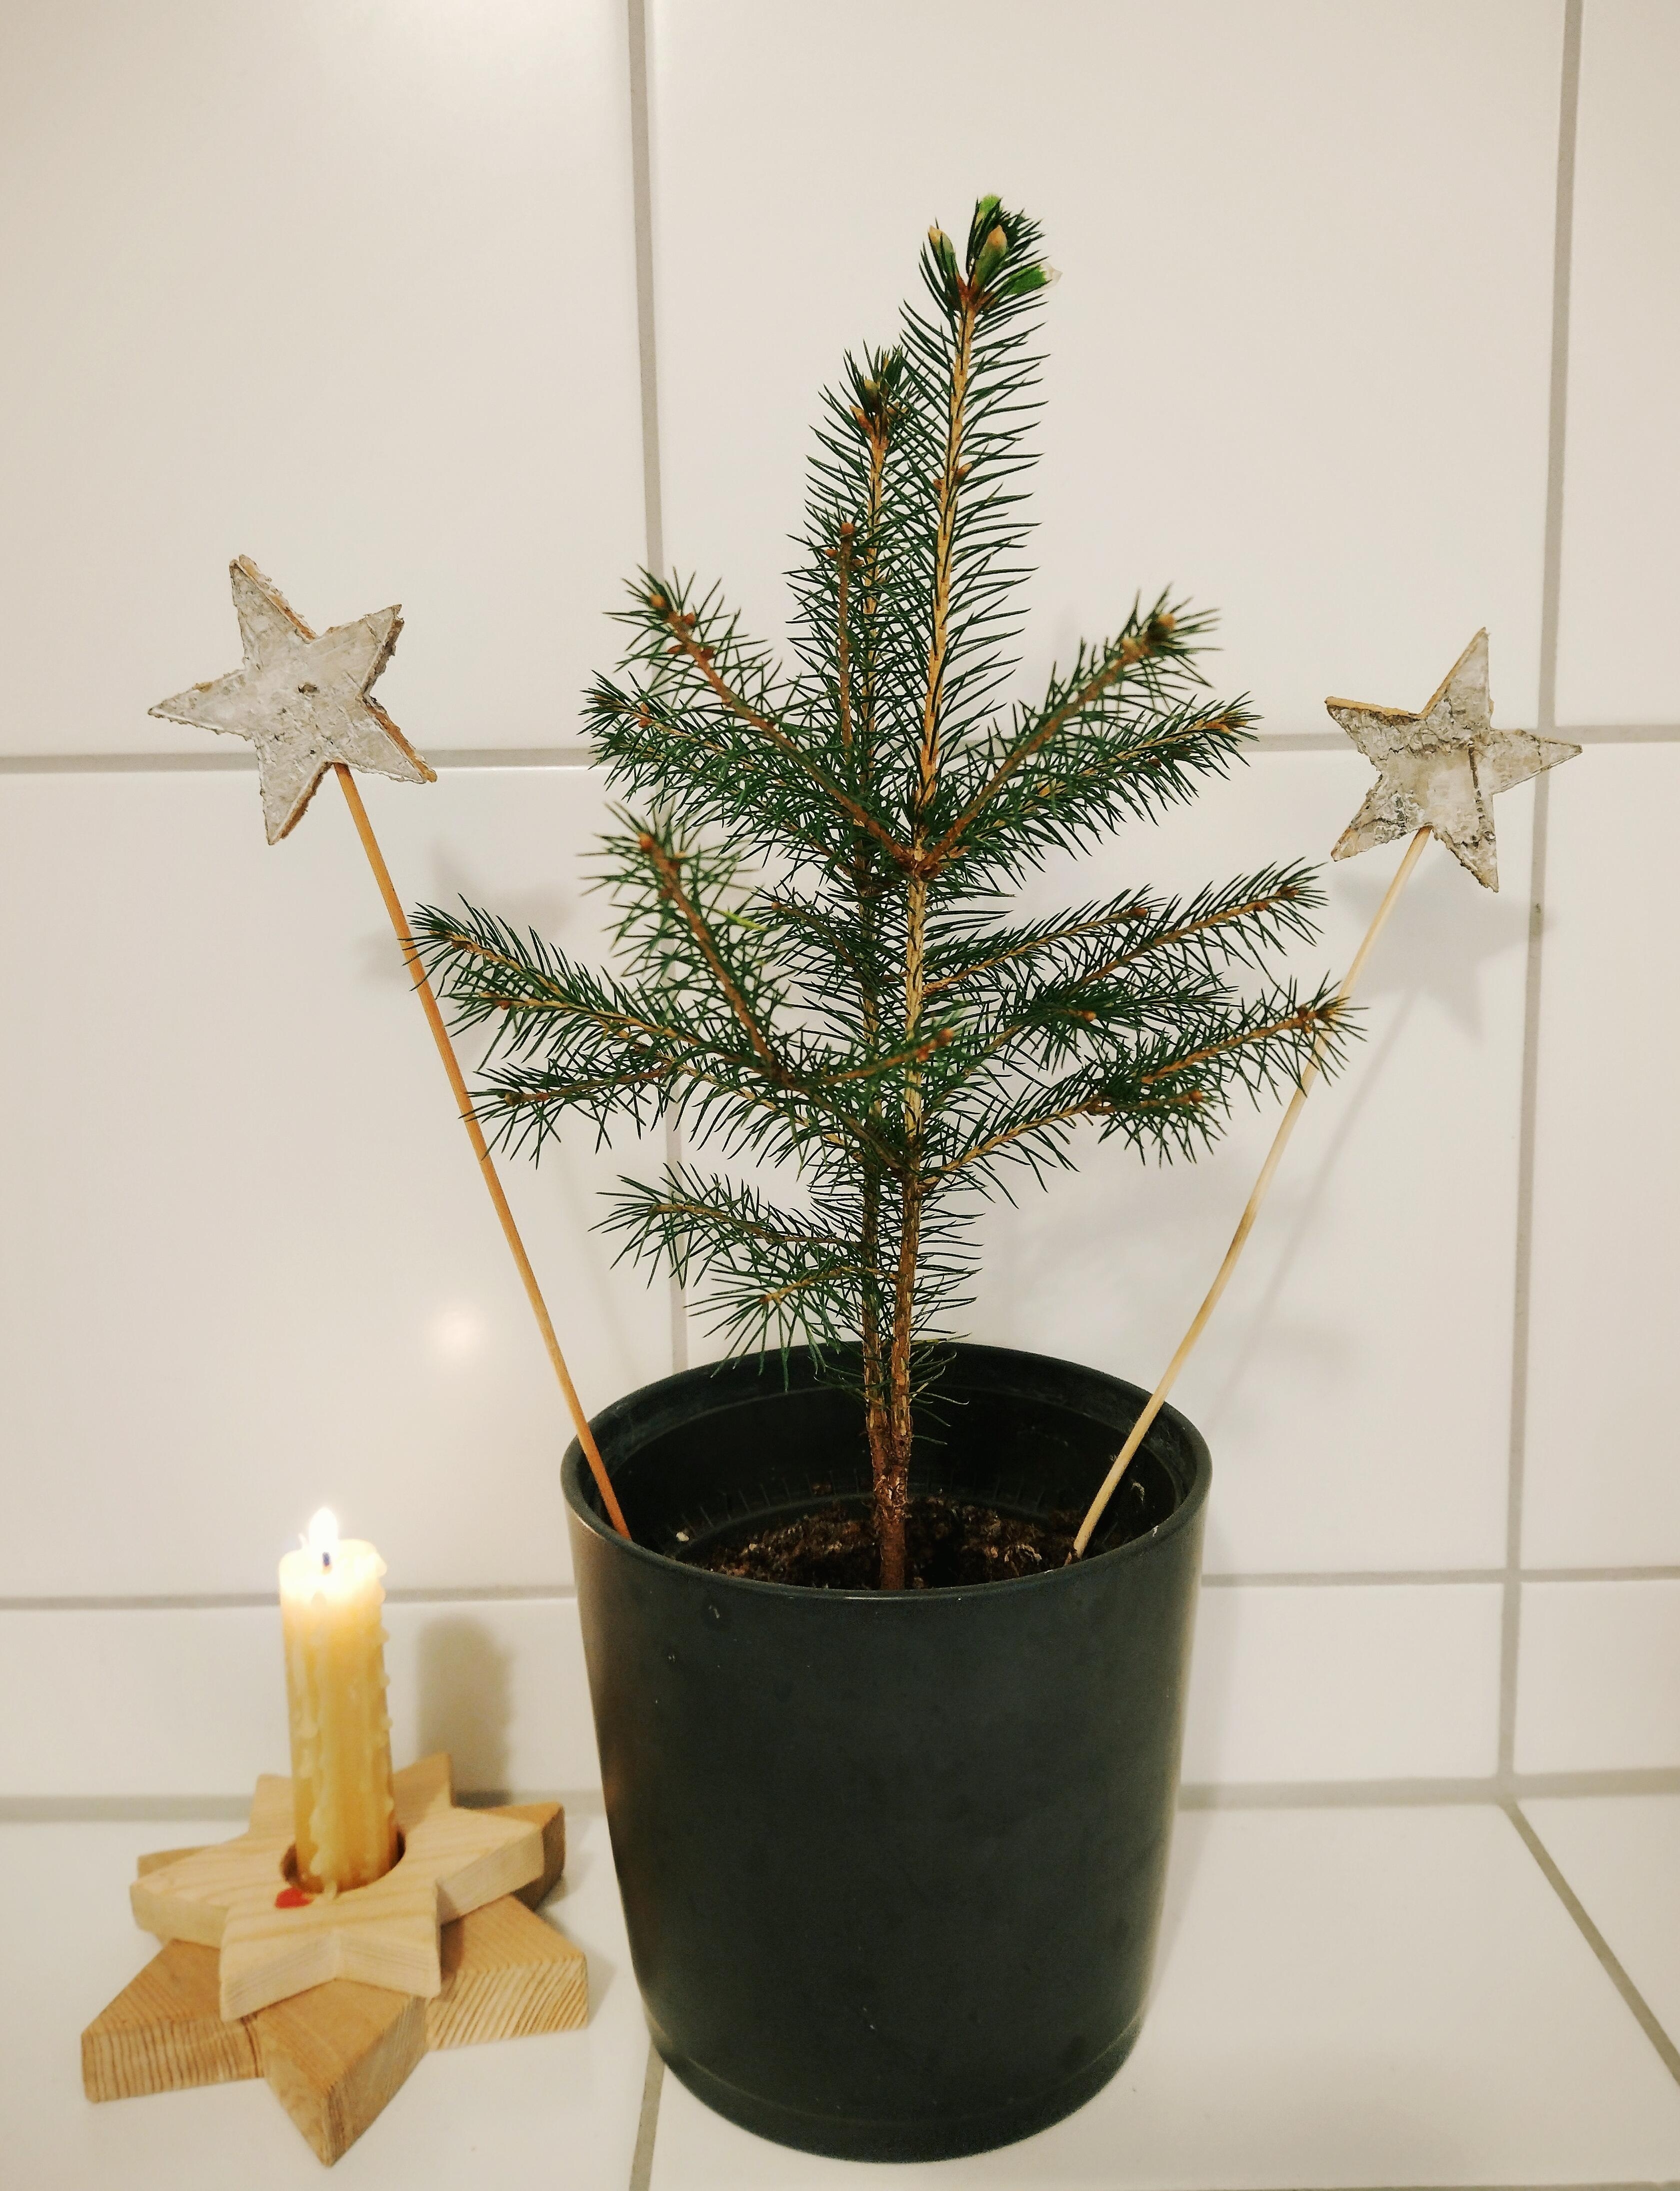 
Er steht immernoch, und treibt aus 😁🌟🌲
#weihnachtsbaum #tanne #zwillinsbäumschen #sterne #kerze